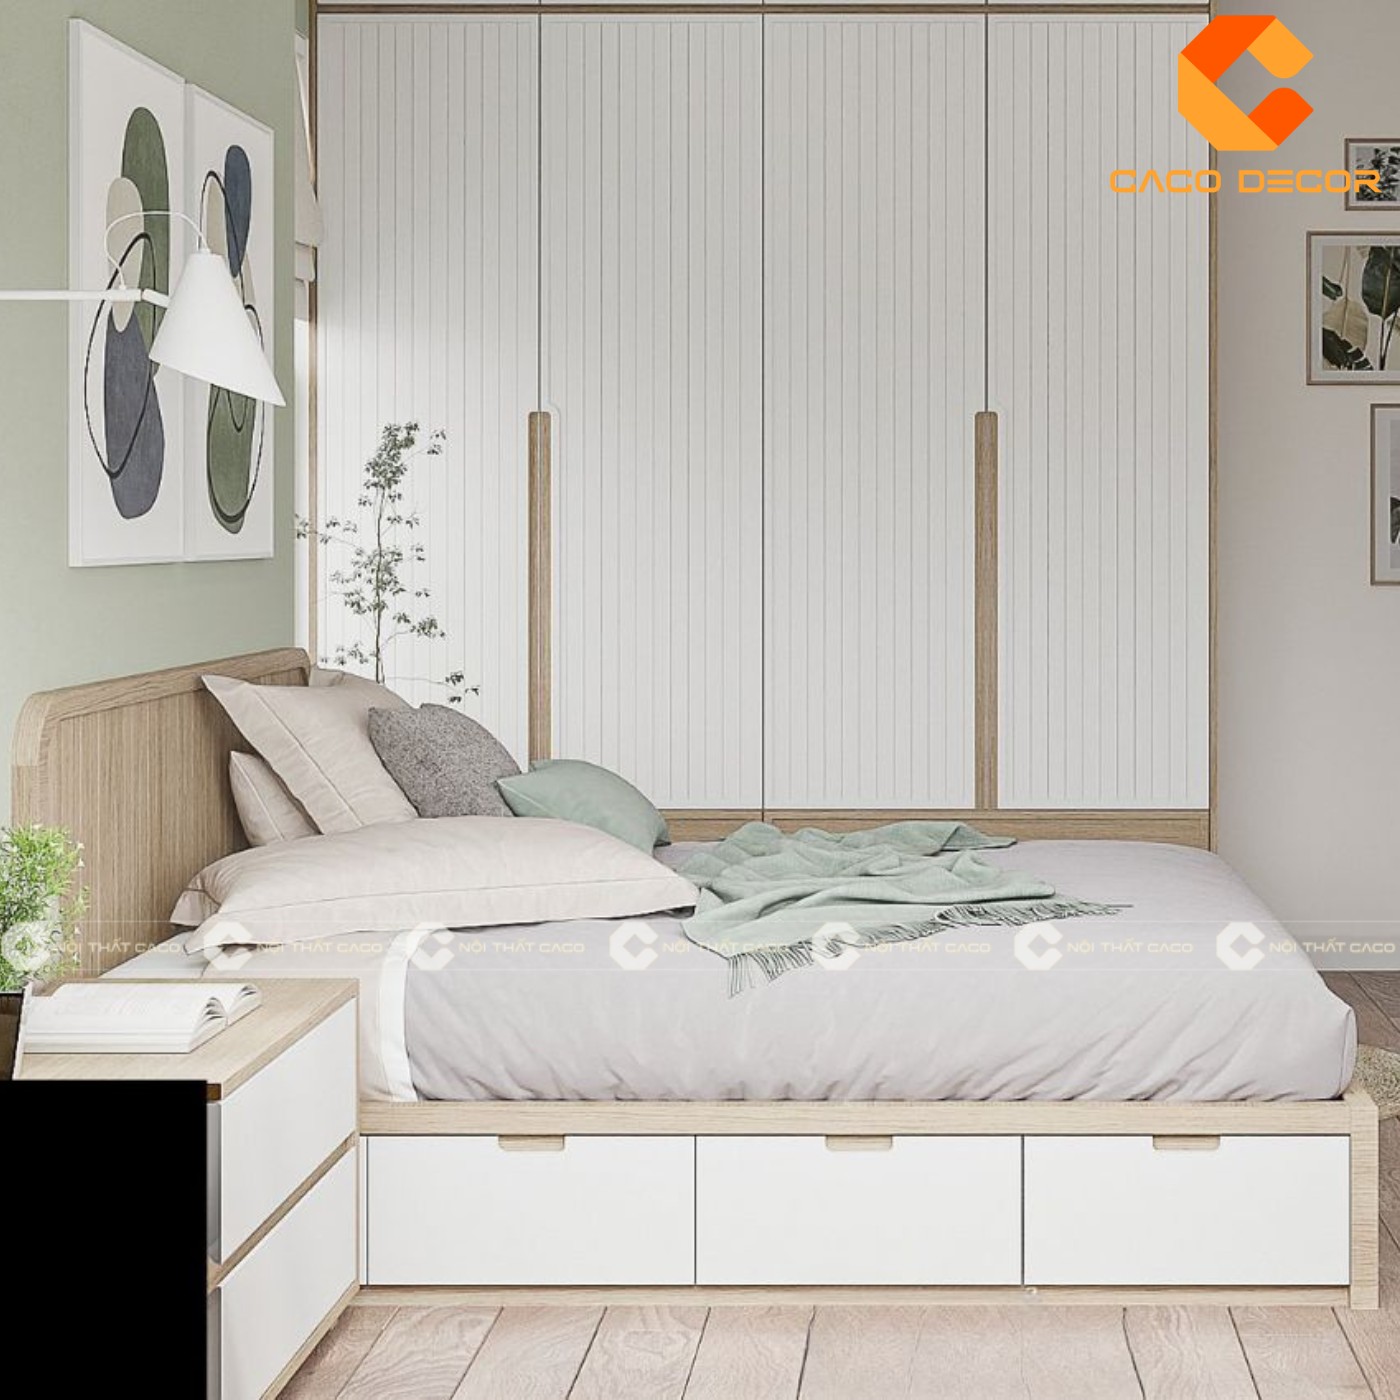 Giường ngủ gỗ công nghiệp đẹp, chất lượng với giá tốt nhất thị trường 12